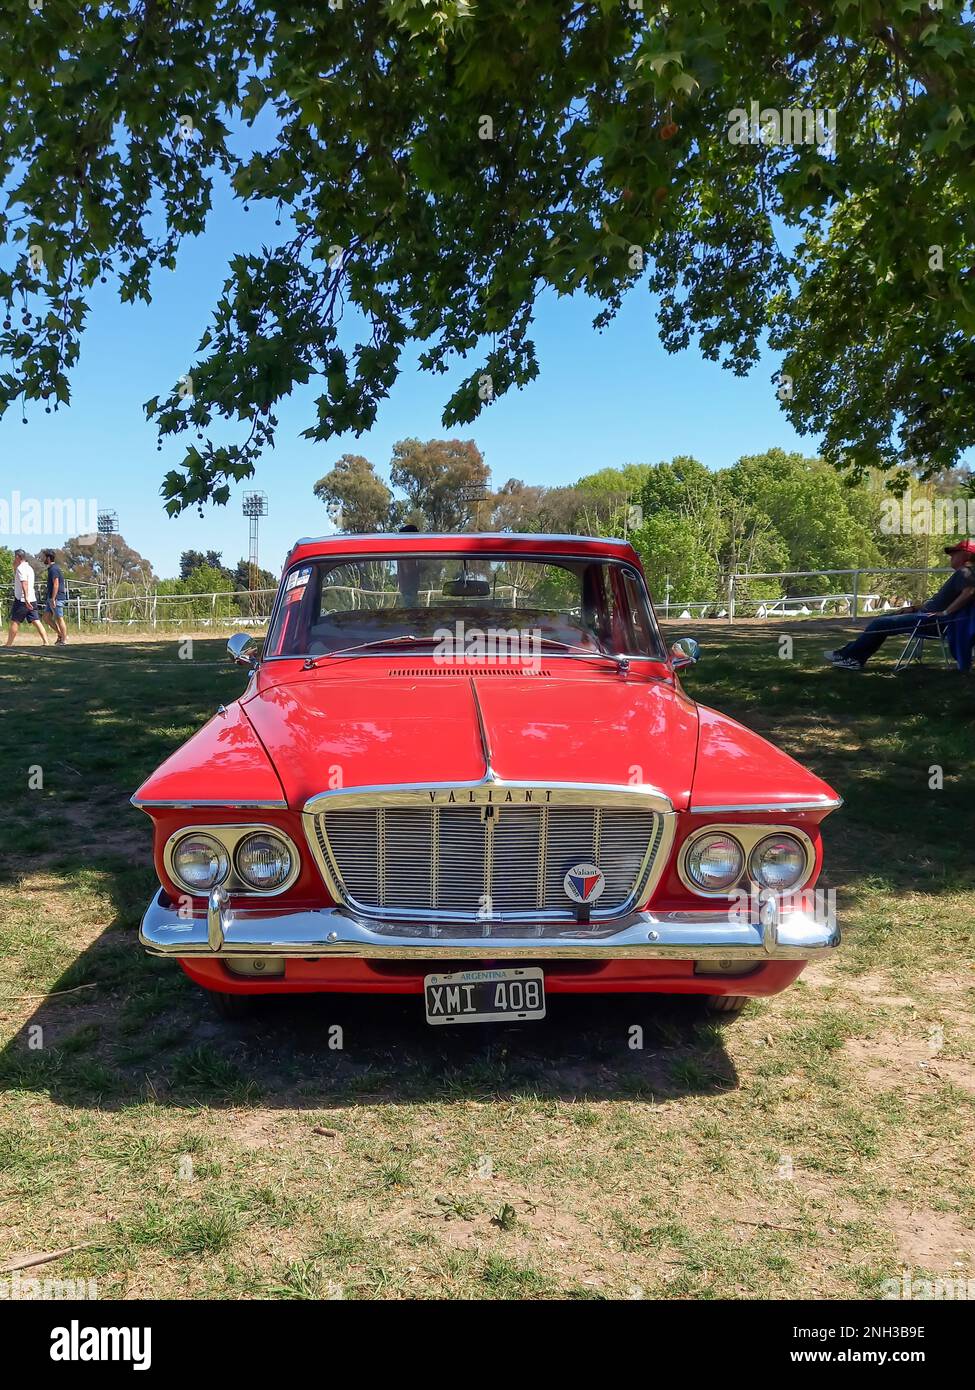 Old Red 1961 Chrysler Plymouth Valiant V 200 berlina compatta a quattro porte in un parco. Natura, erba, alberi. Auto classica Autoclasica 2022. CopySpace. Foto Stock